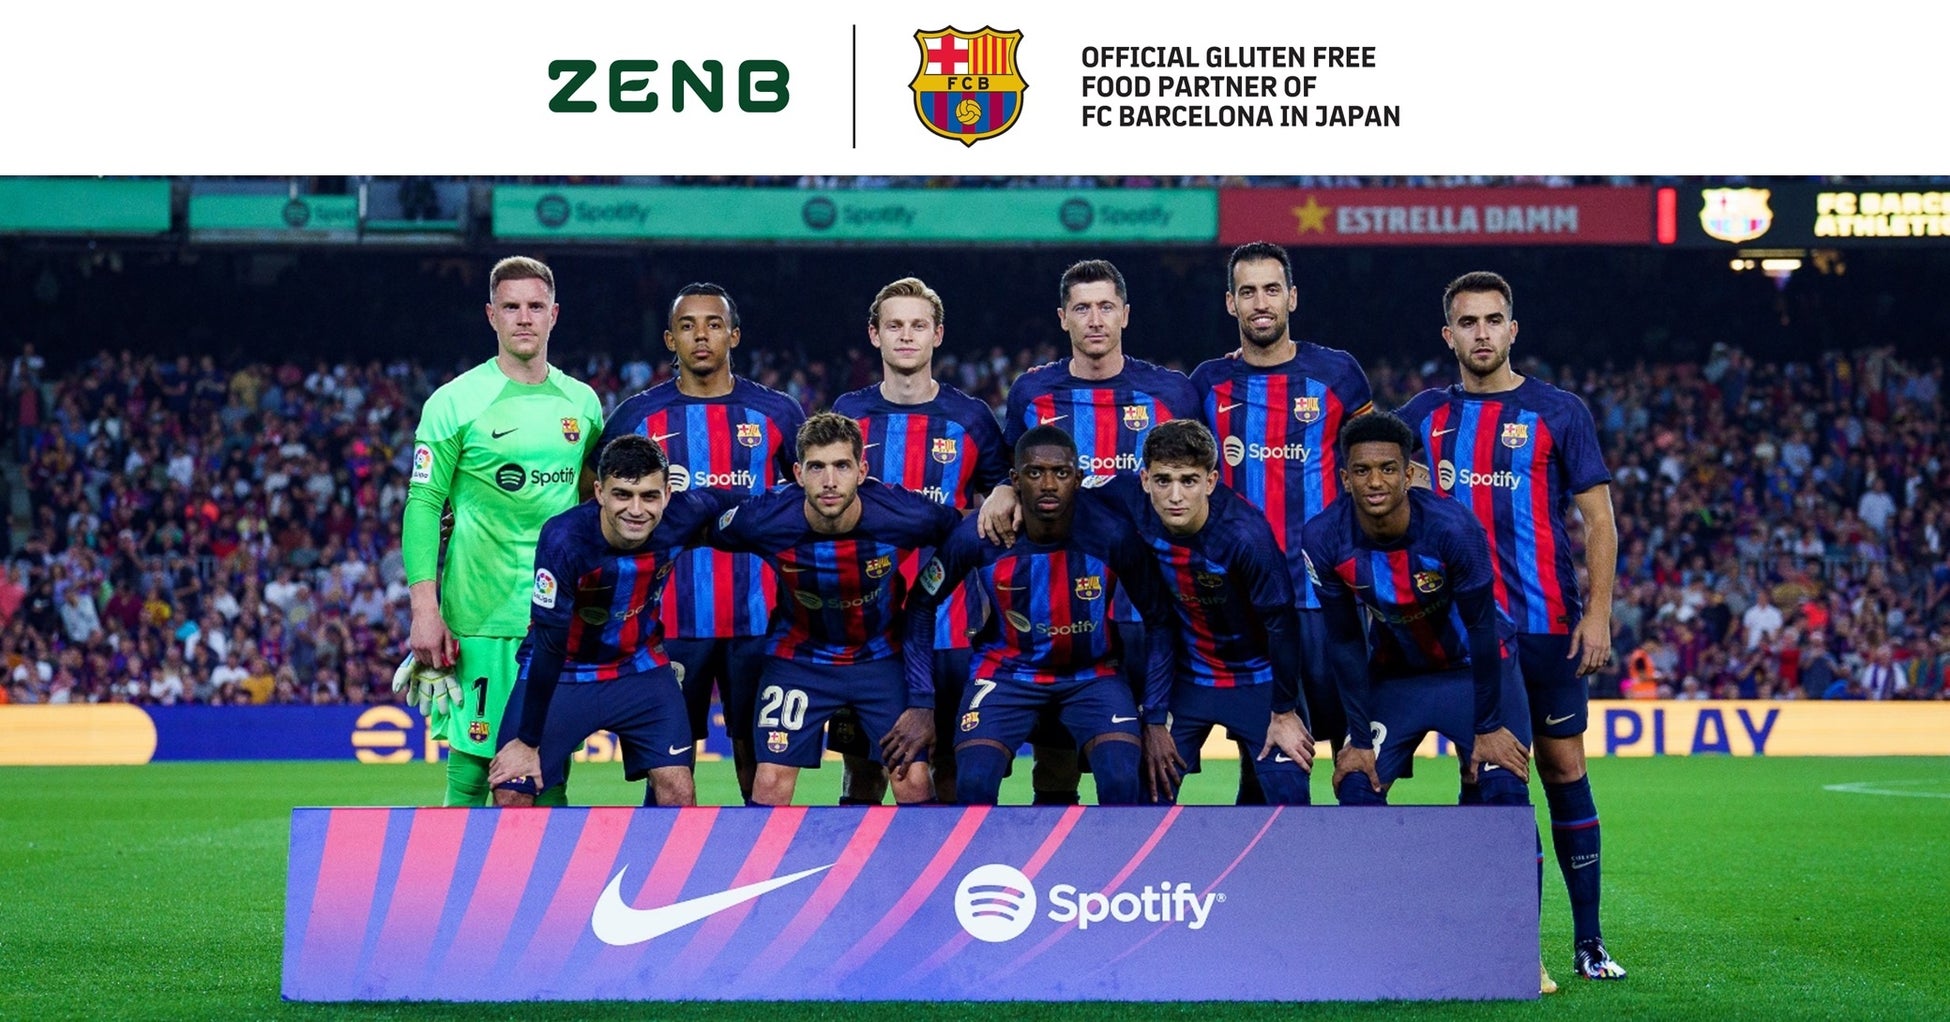 ZENB、FCバルセロナとクラブ初の公式グルテンフリーフードパートナーとして契約合意のサブ画像1